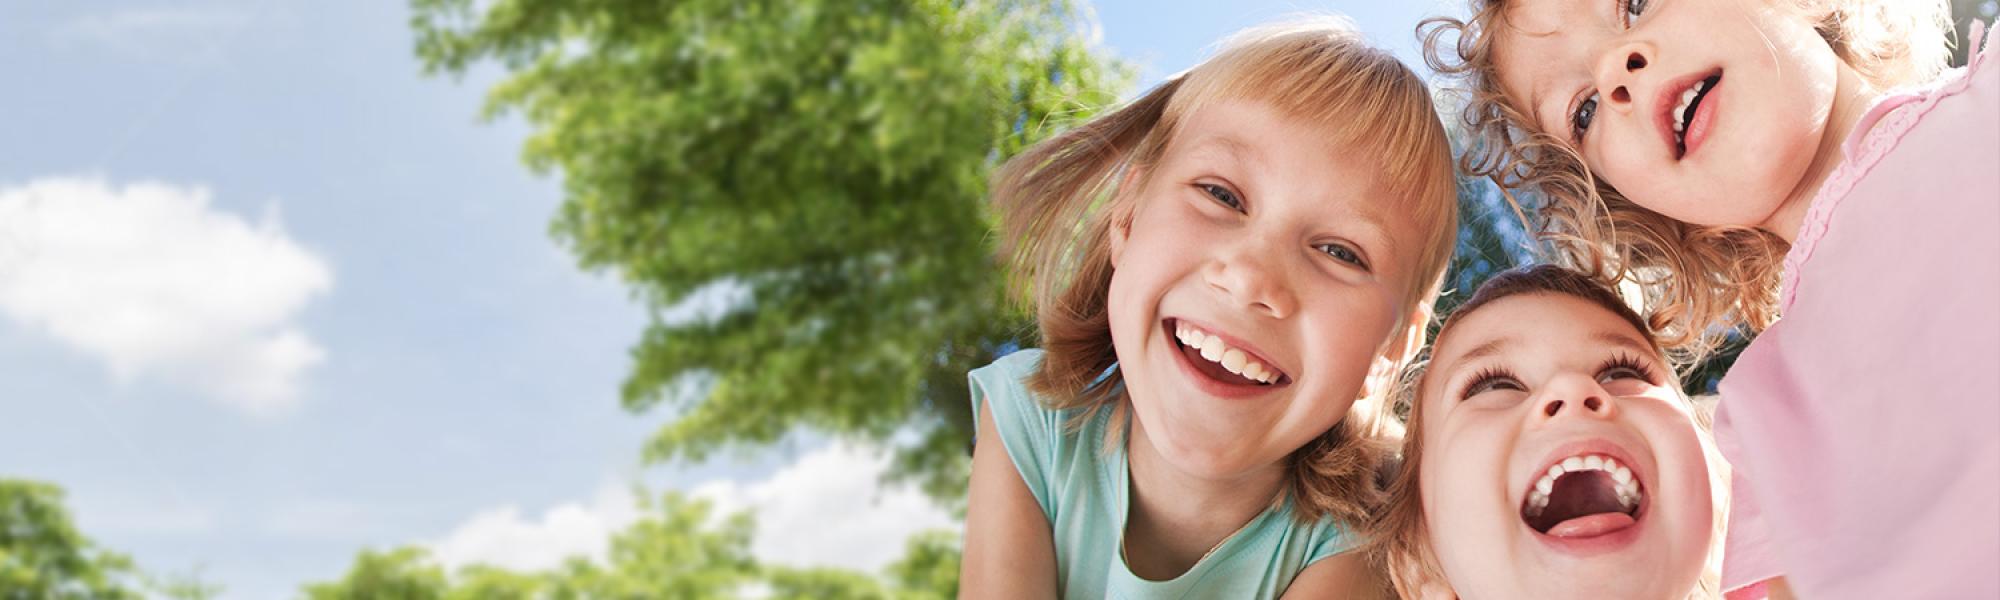 familydent kinderfrneundlicher Zahnarzt lachende Kinder